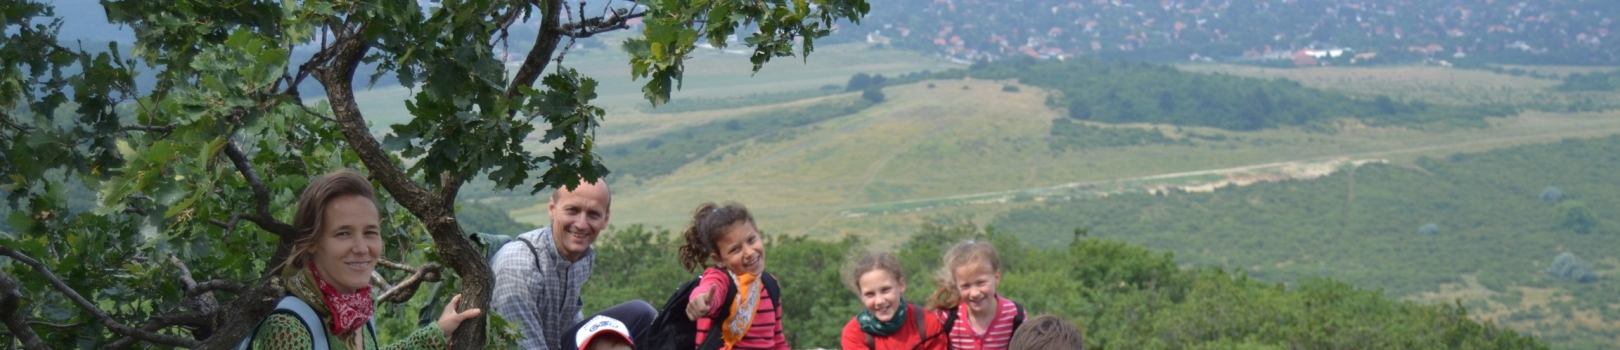 Pilisi Parkerdő Zrt. Hármashatár-hegyi Erdei Iskola programjai, árai A Hármashatár-hegyi erdei iskolát erdőajándéka program alapján működik.